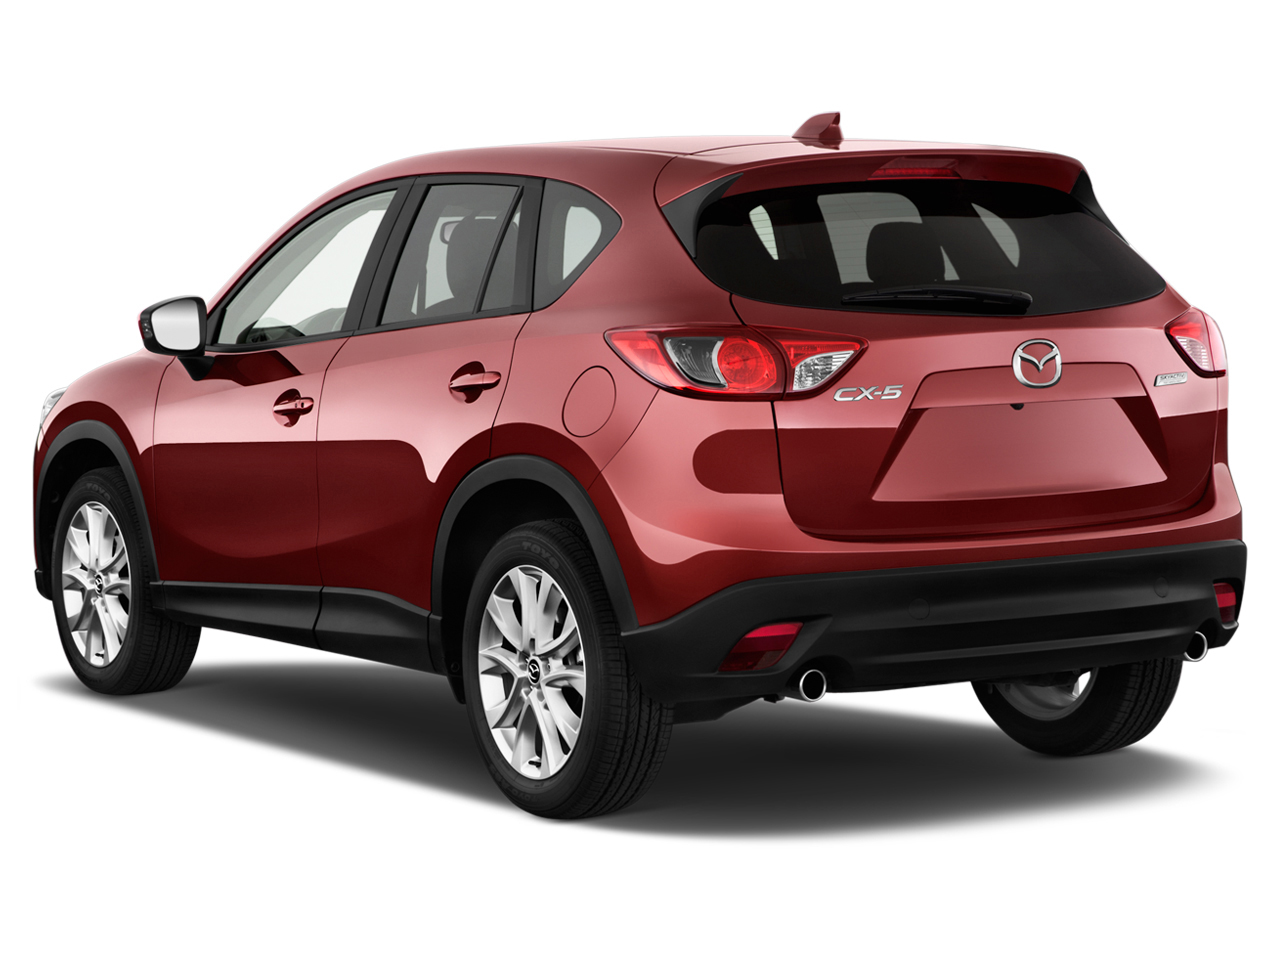 Đánh giá chi tiết xe Mazda CX-5 2015